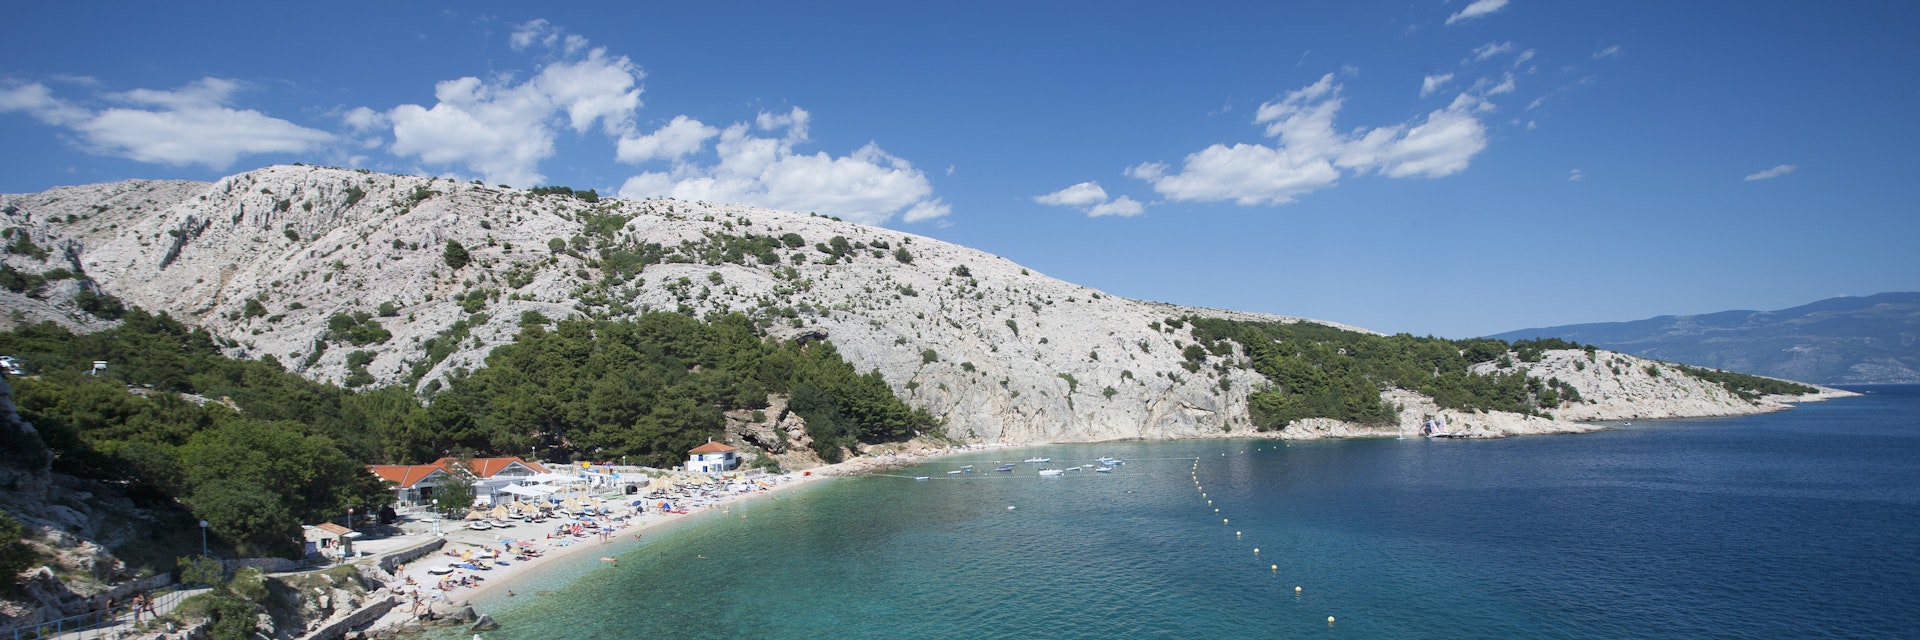 Croatia, View of Bunculuka Beach at Krk island